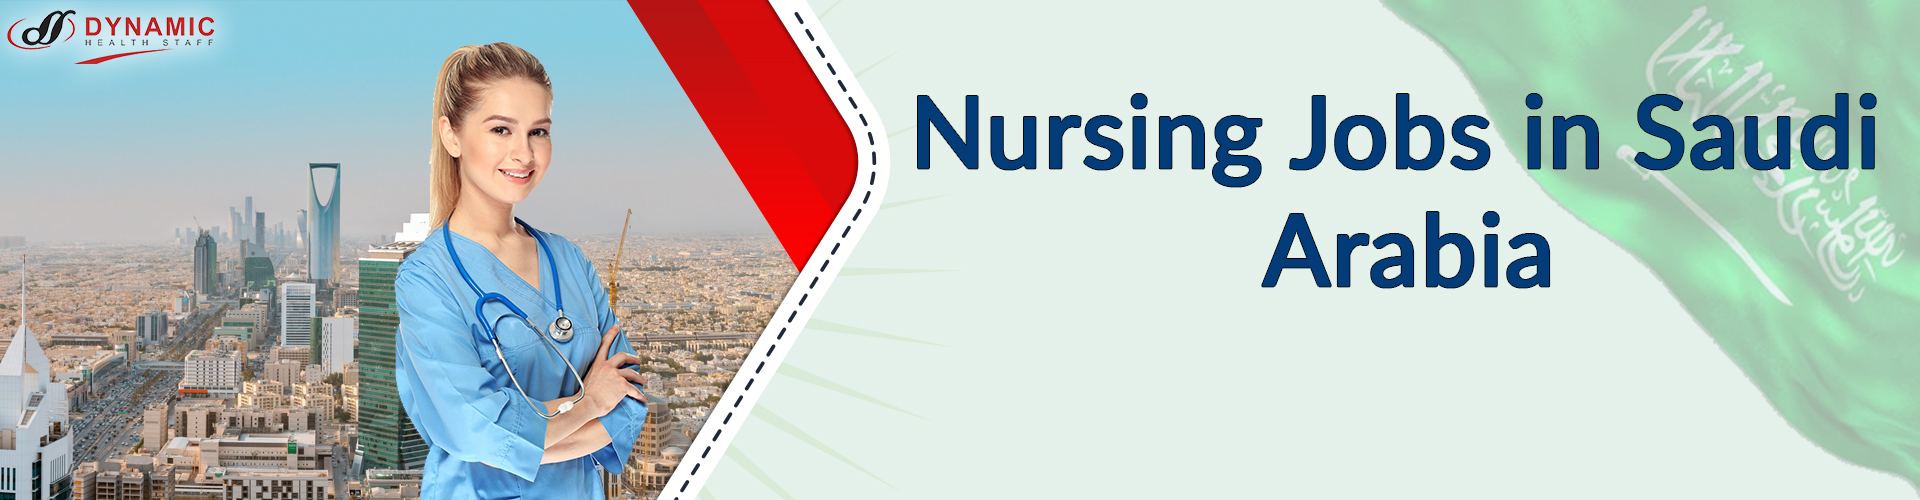 Nursing Jobs in Saudi Arabia